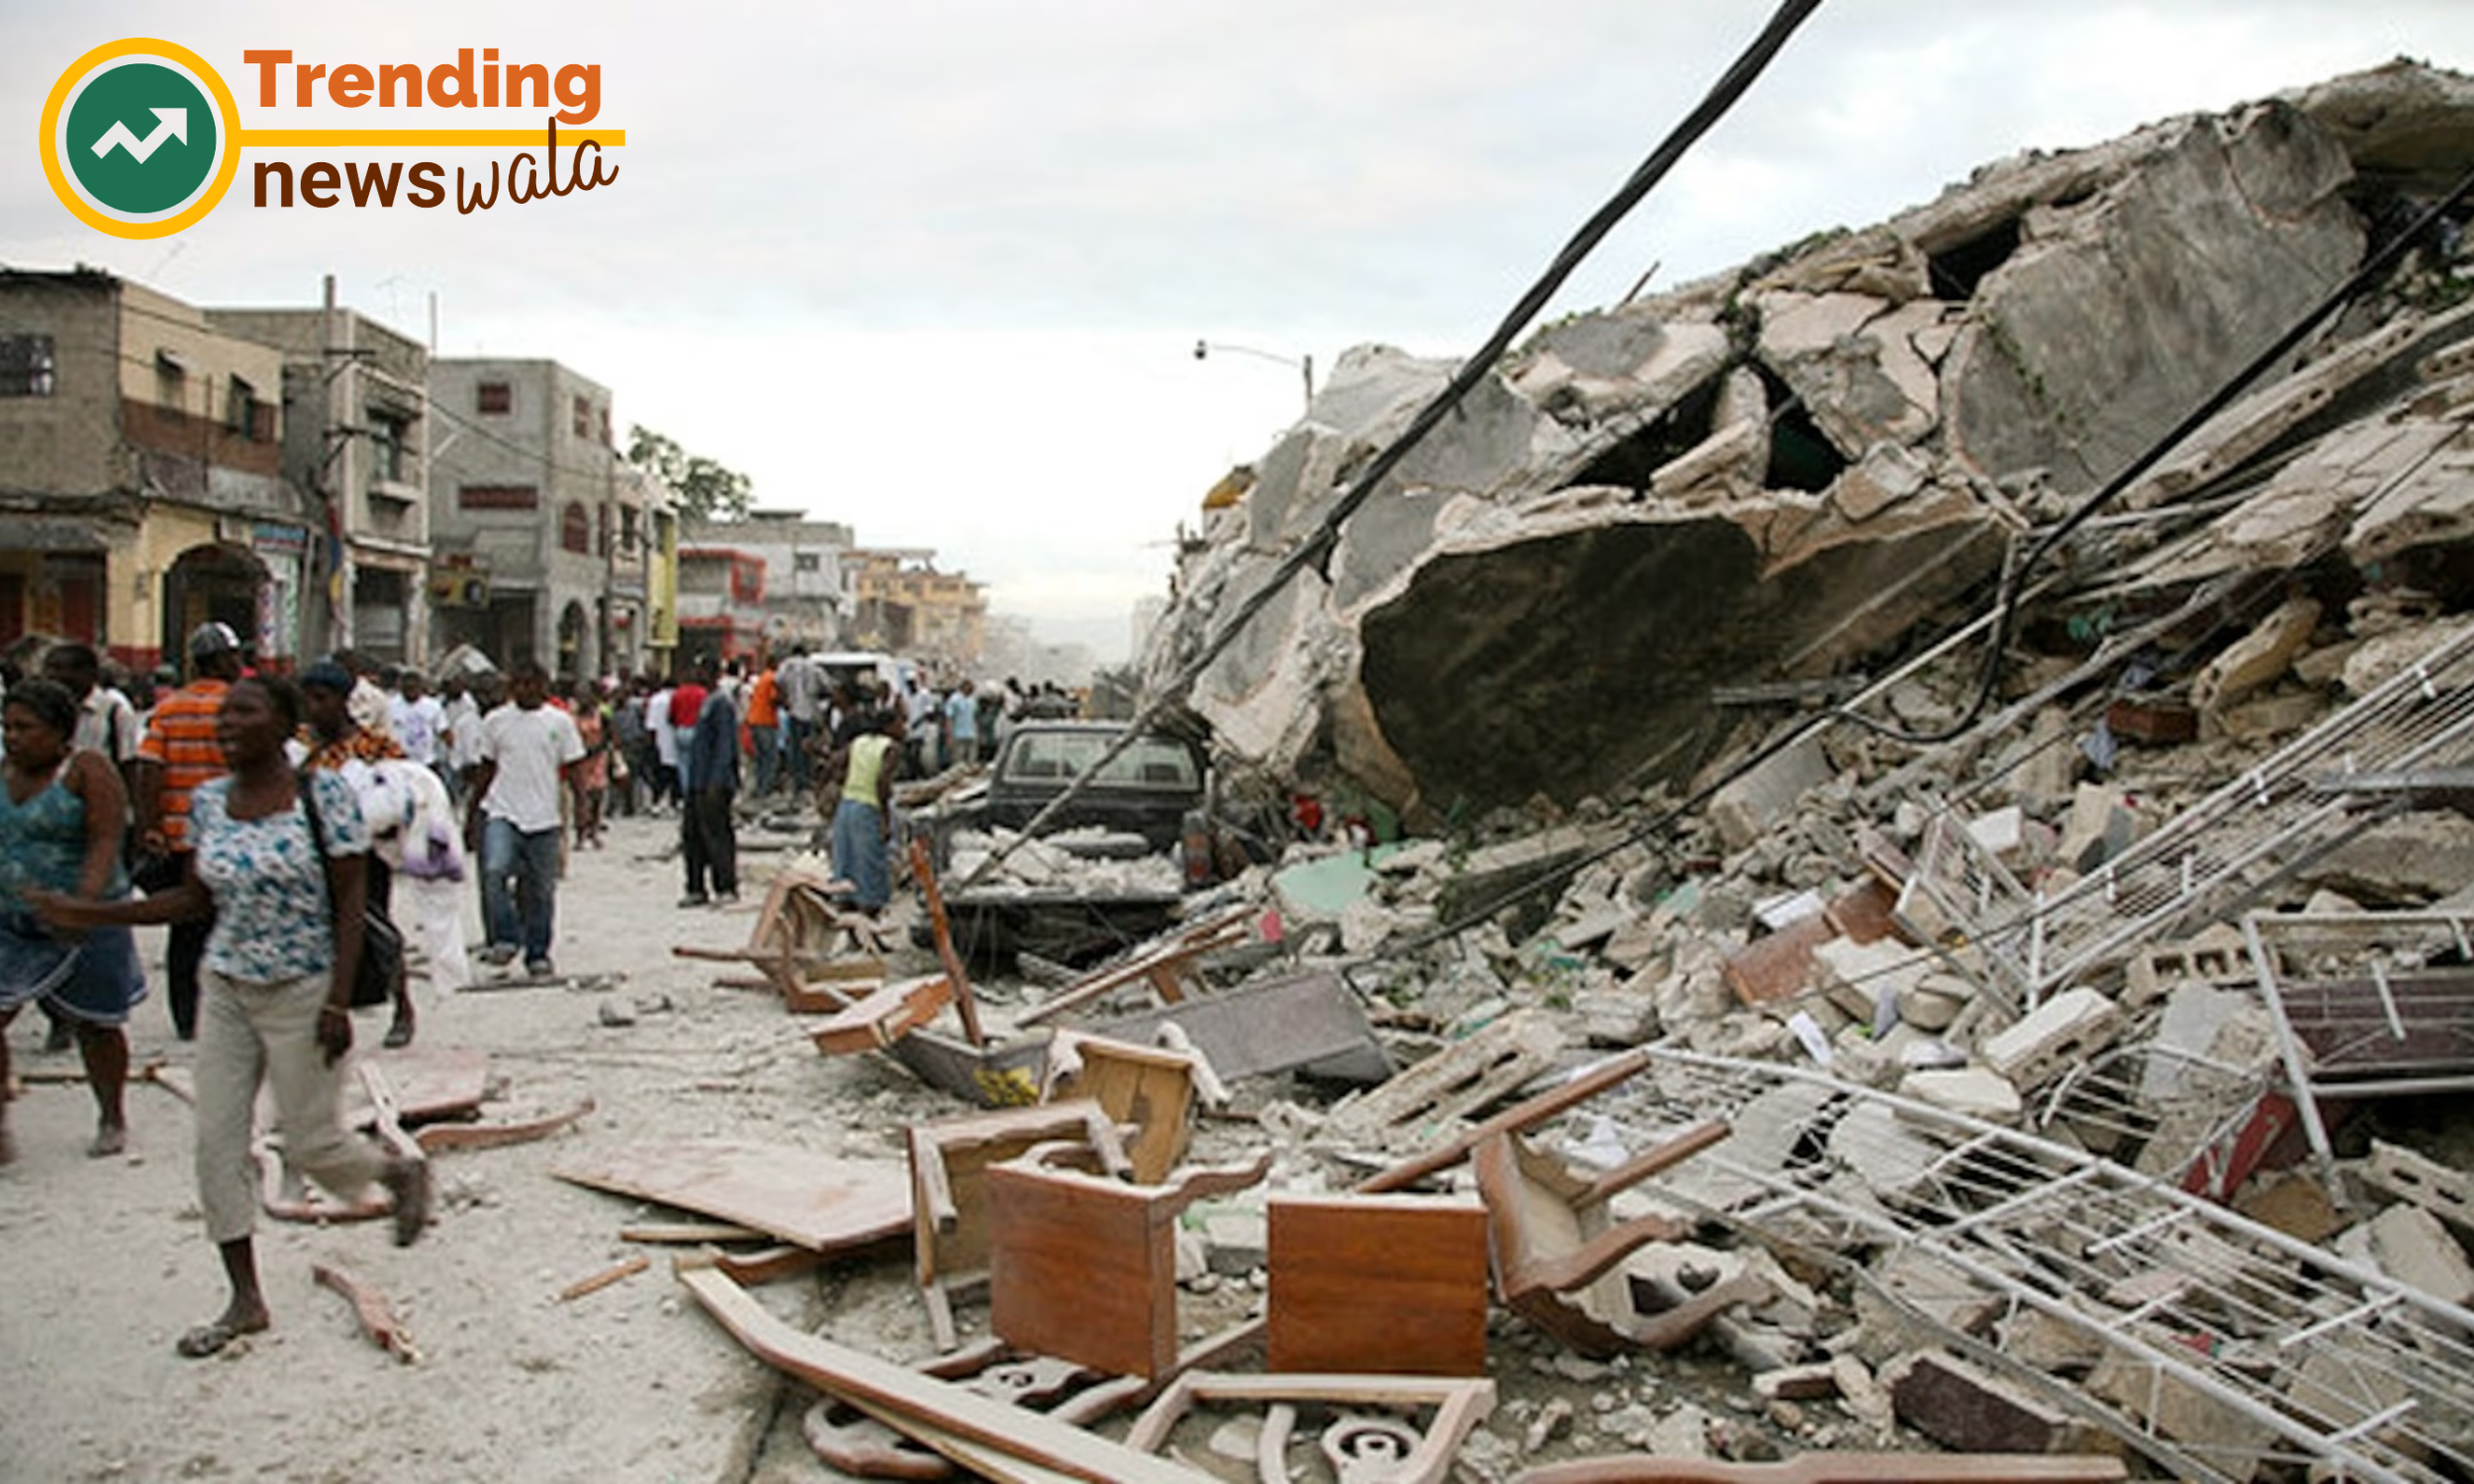 2010 earthquake in Haiti